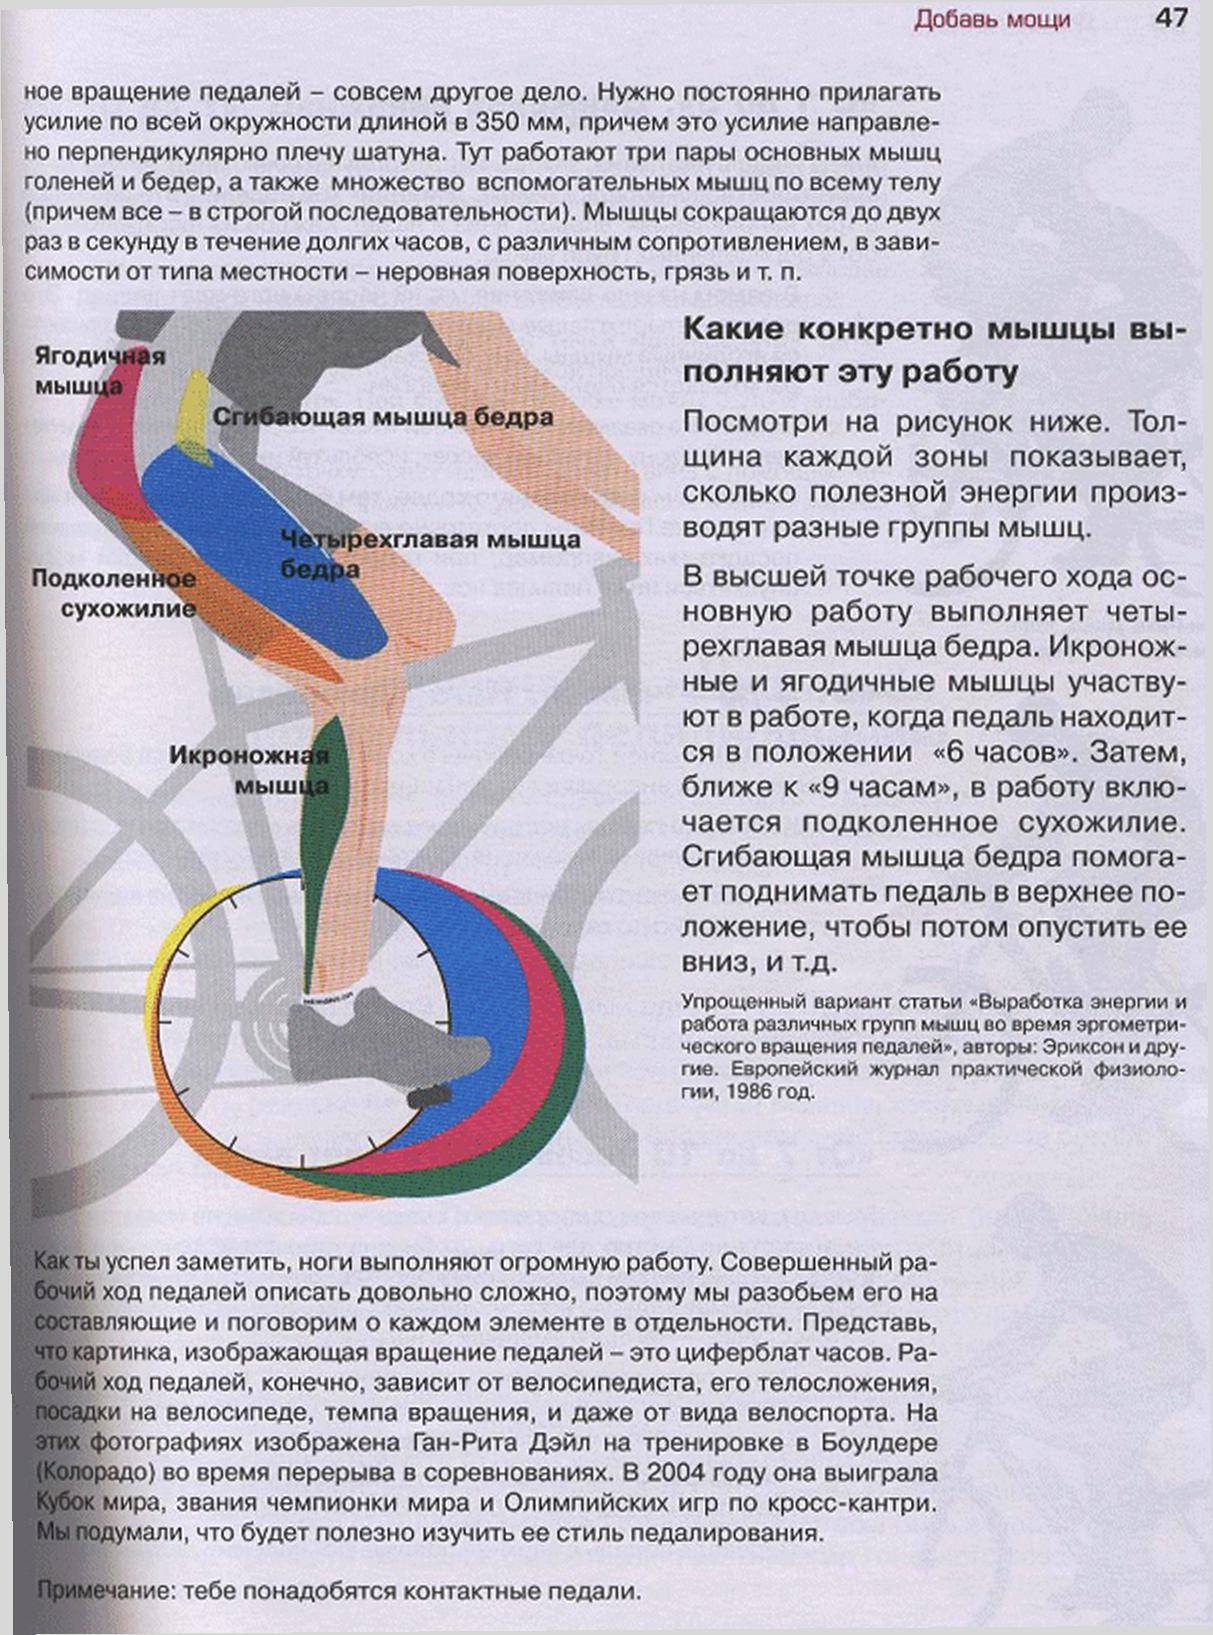 Упражнение велосипед: польза и вред, какие мышцы работают, как делать